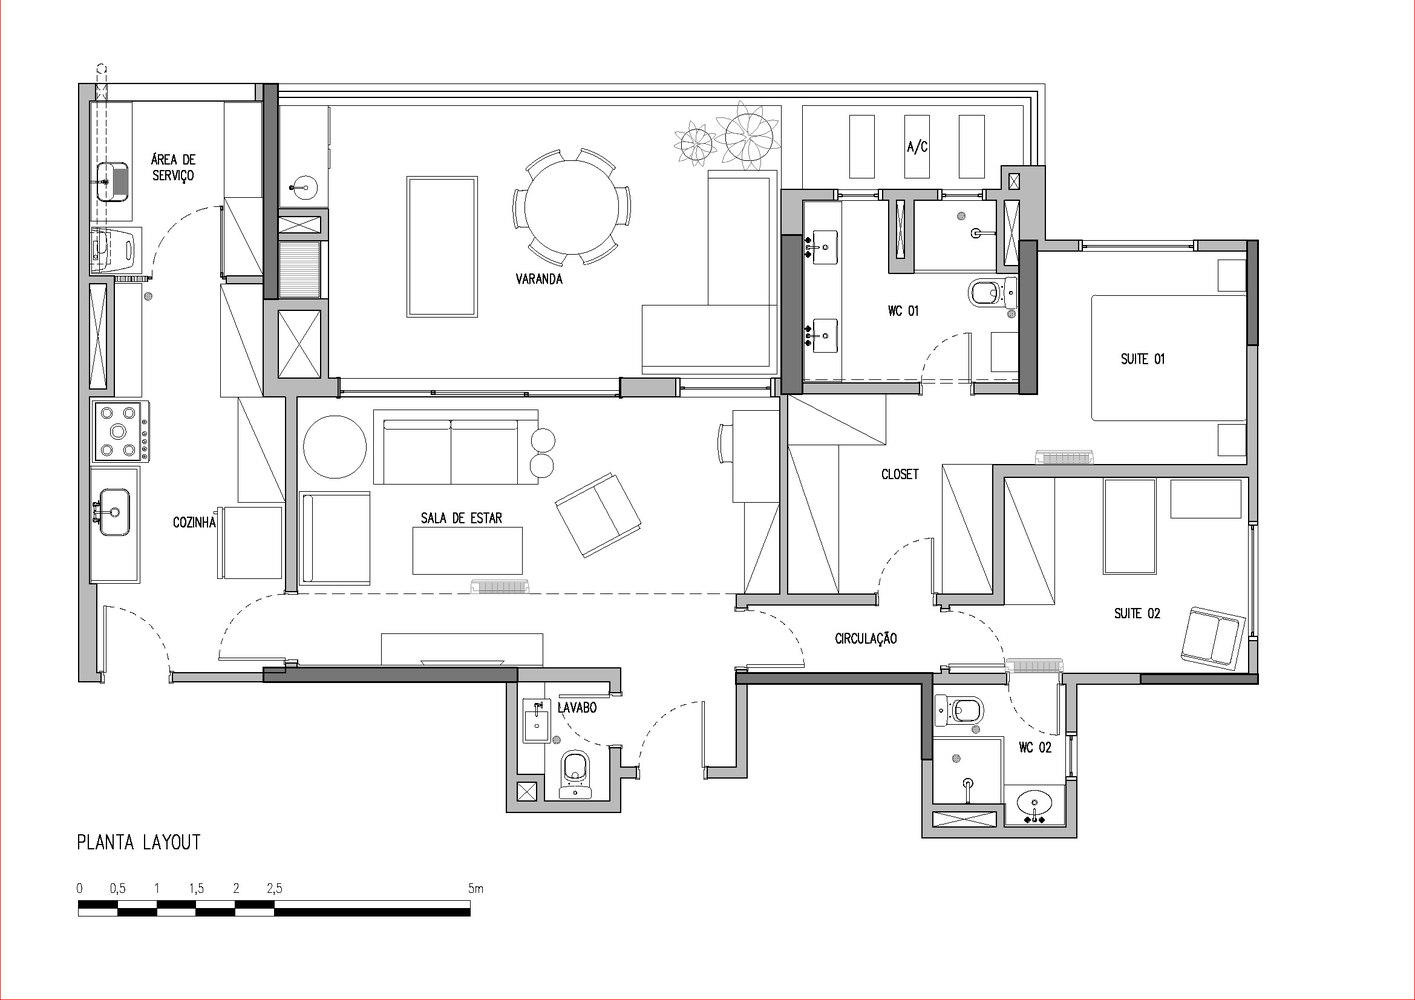 Sơ đồ thiết kế nội thất căn hộ diện tích 120m² do đội ngũ DT Studio cung cấp.